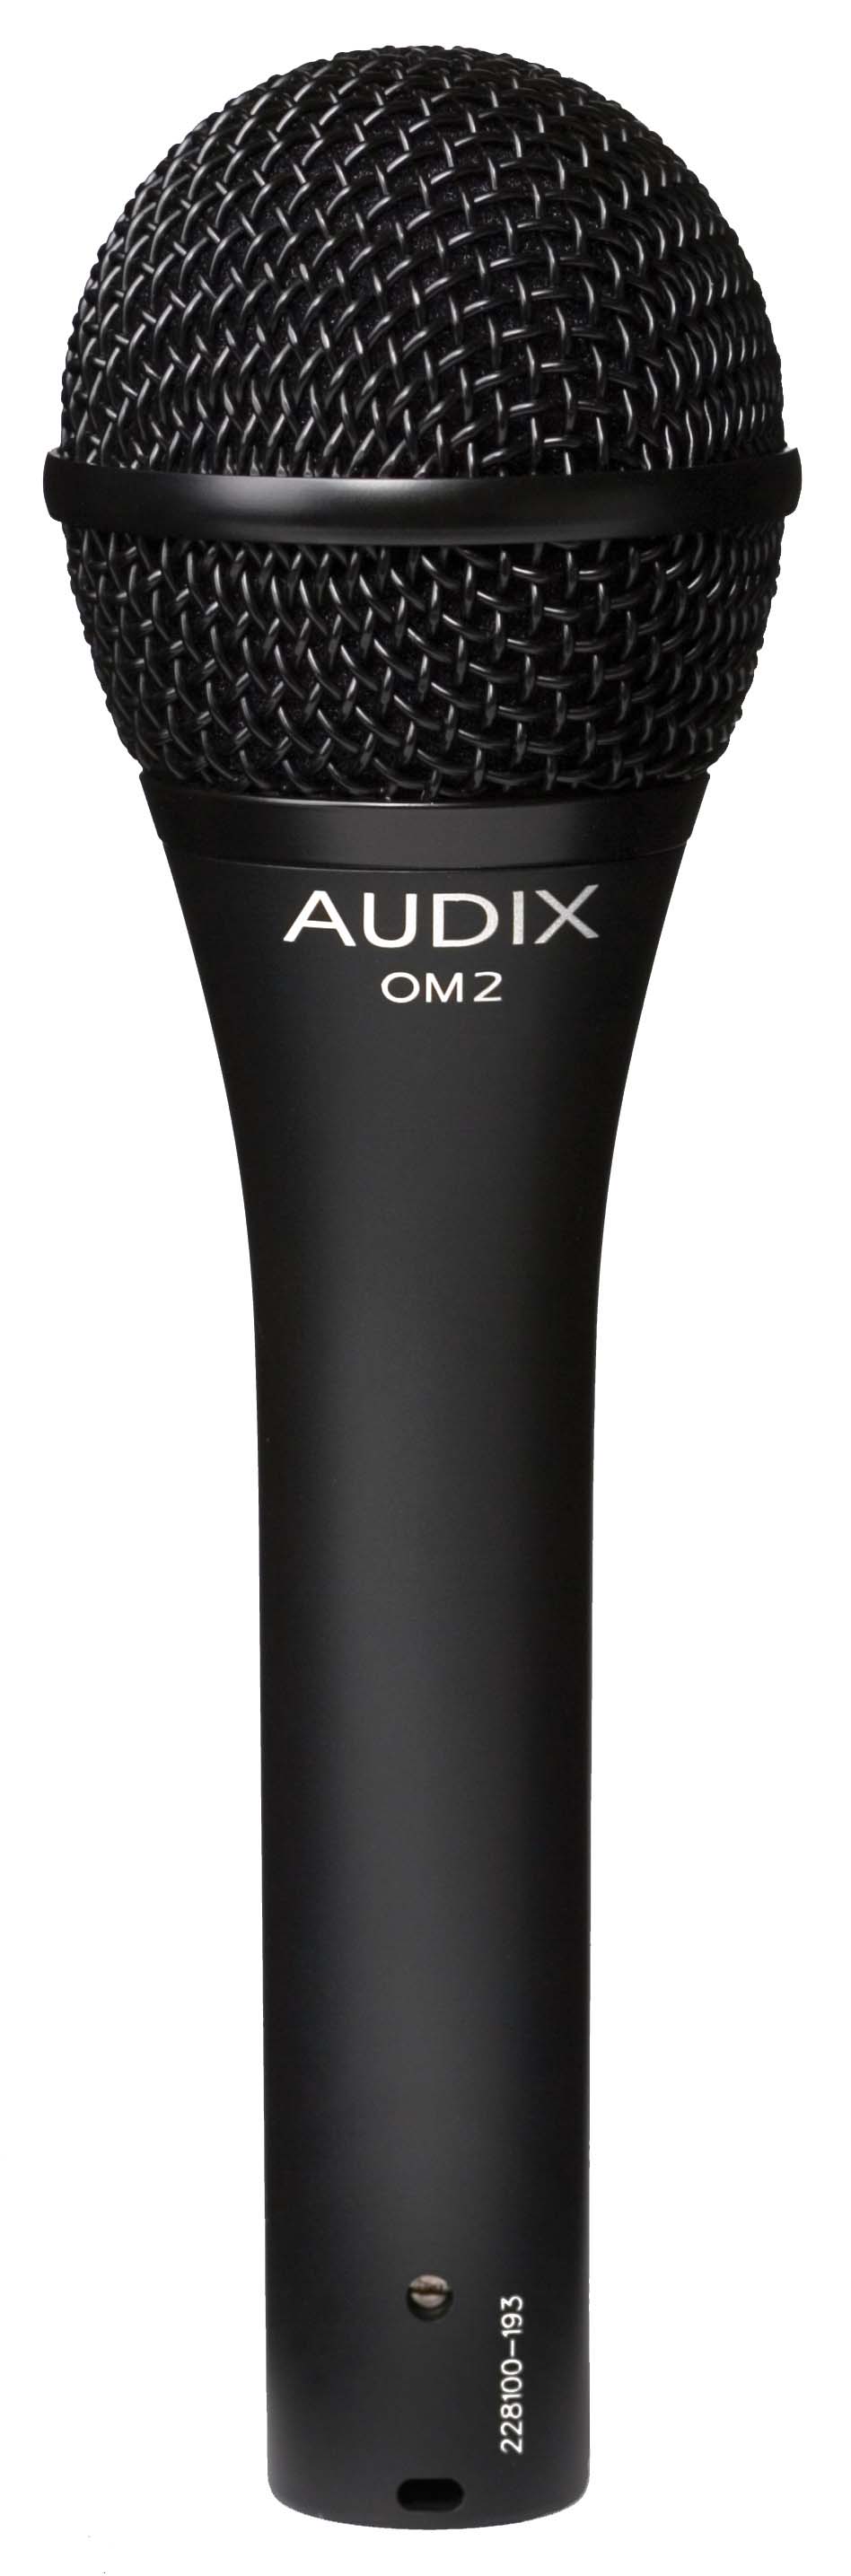 Ручные микрофоны AUDIX OM2 ручные микрофоны audix om3